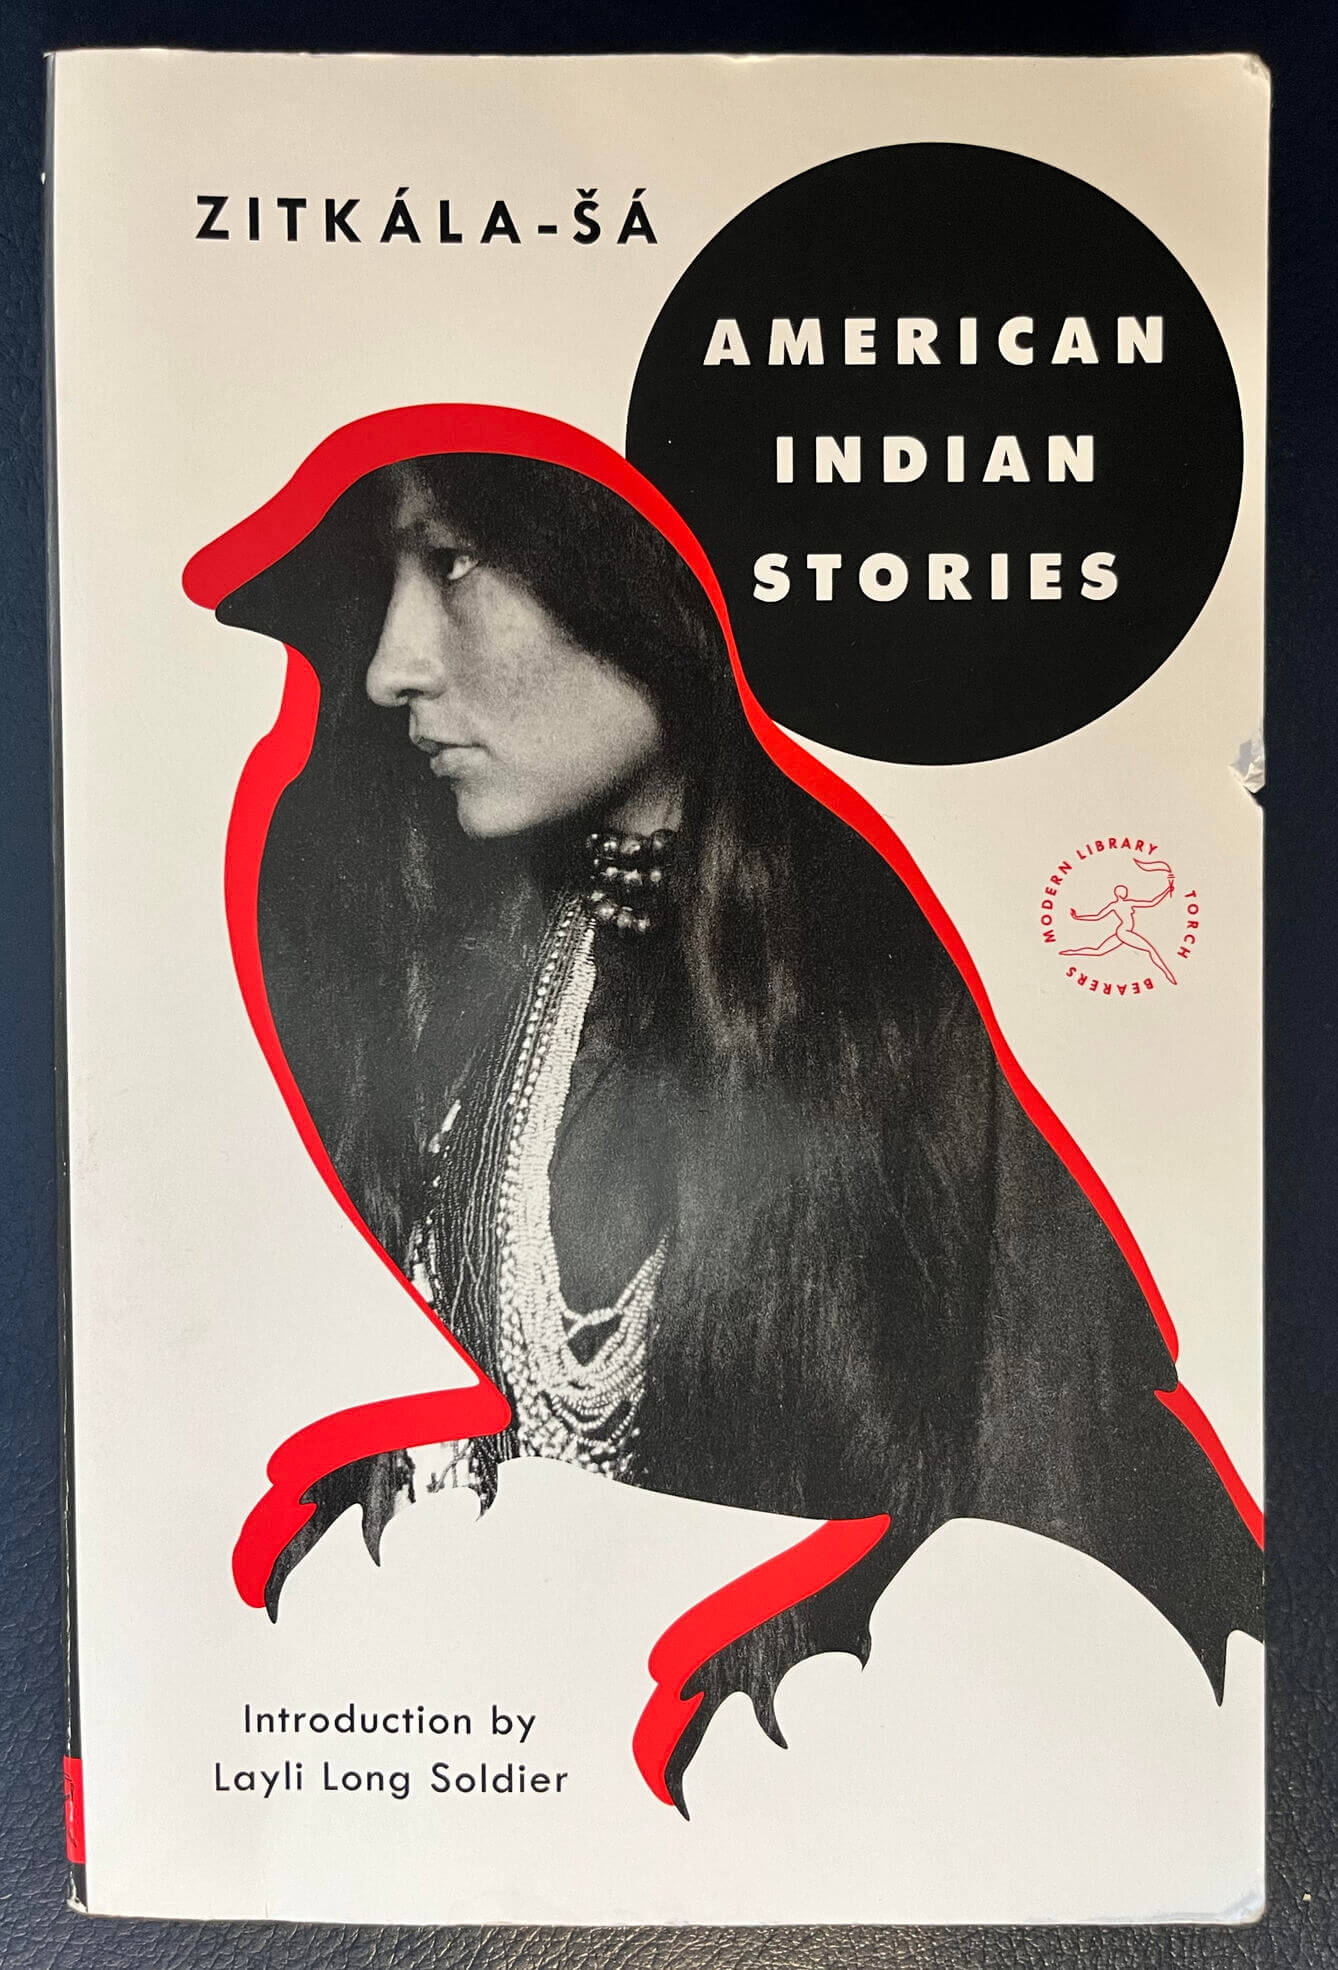 “American Indian Stories” by Zitkála-šá